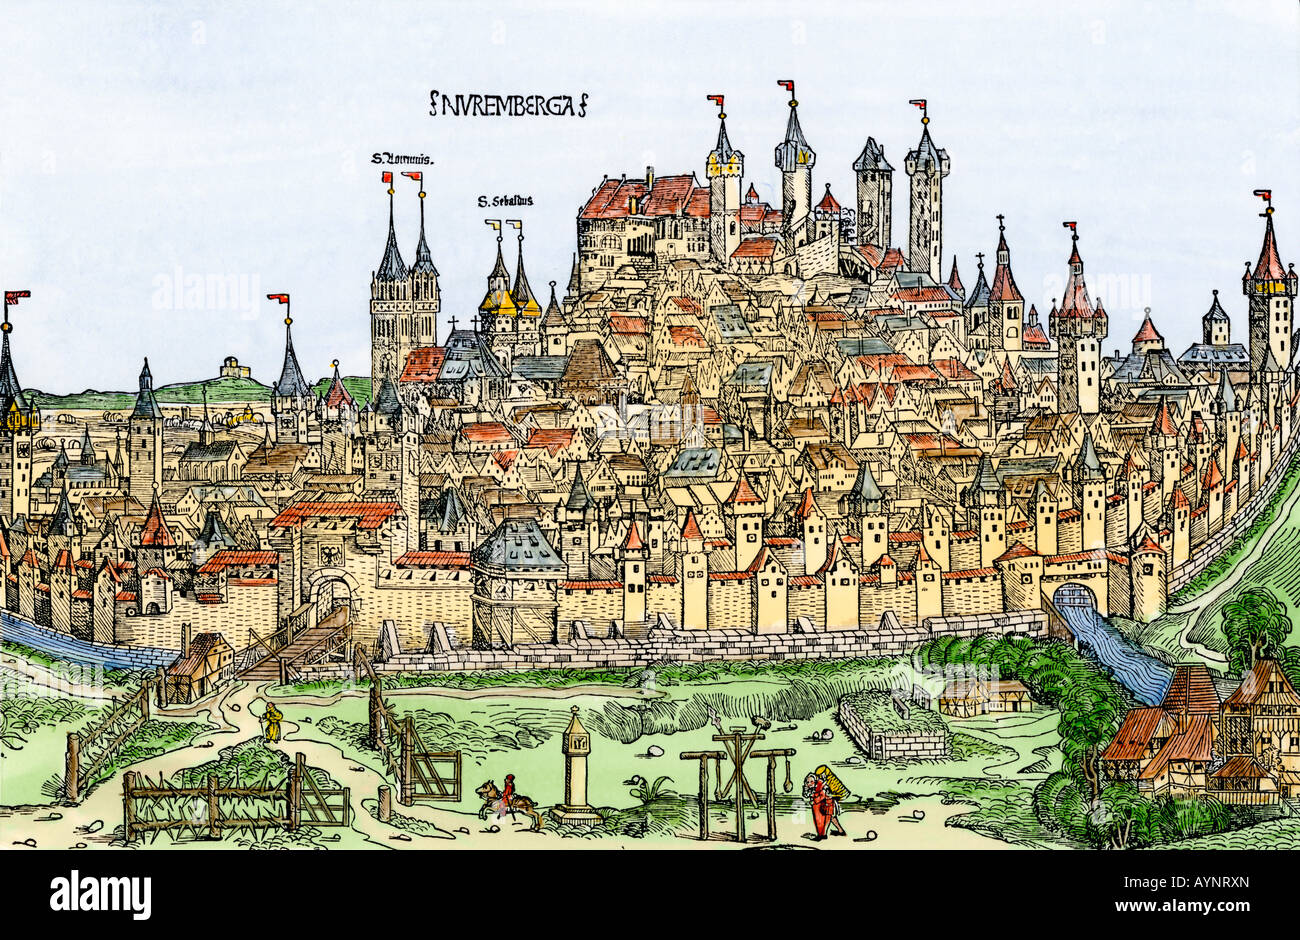 Remparts de la ville médiévale de Nuremberg Allemagne années 1400. À la main, gravure sur bois Banque D'Images